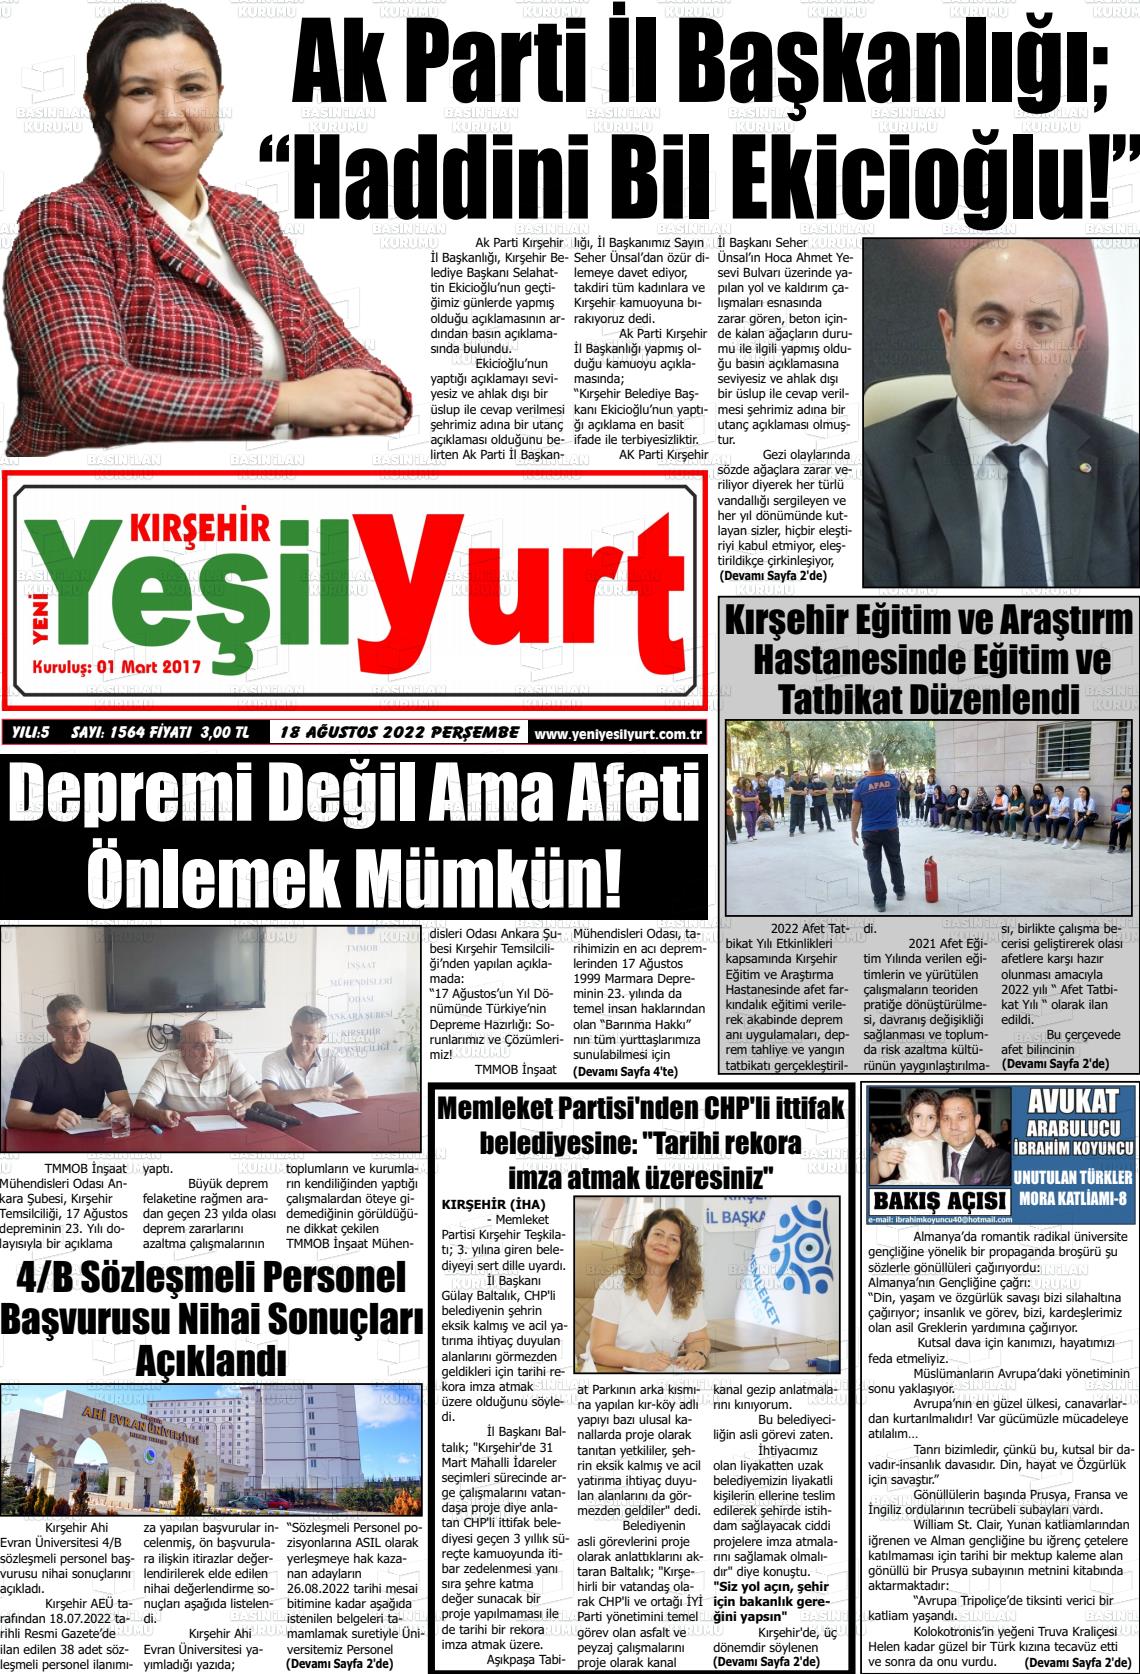 18 Ağustos 2022 Yeni Yeşilyurt Gazete Manşeti